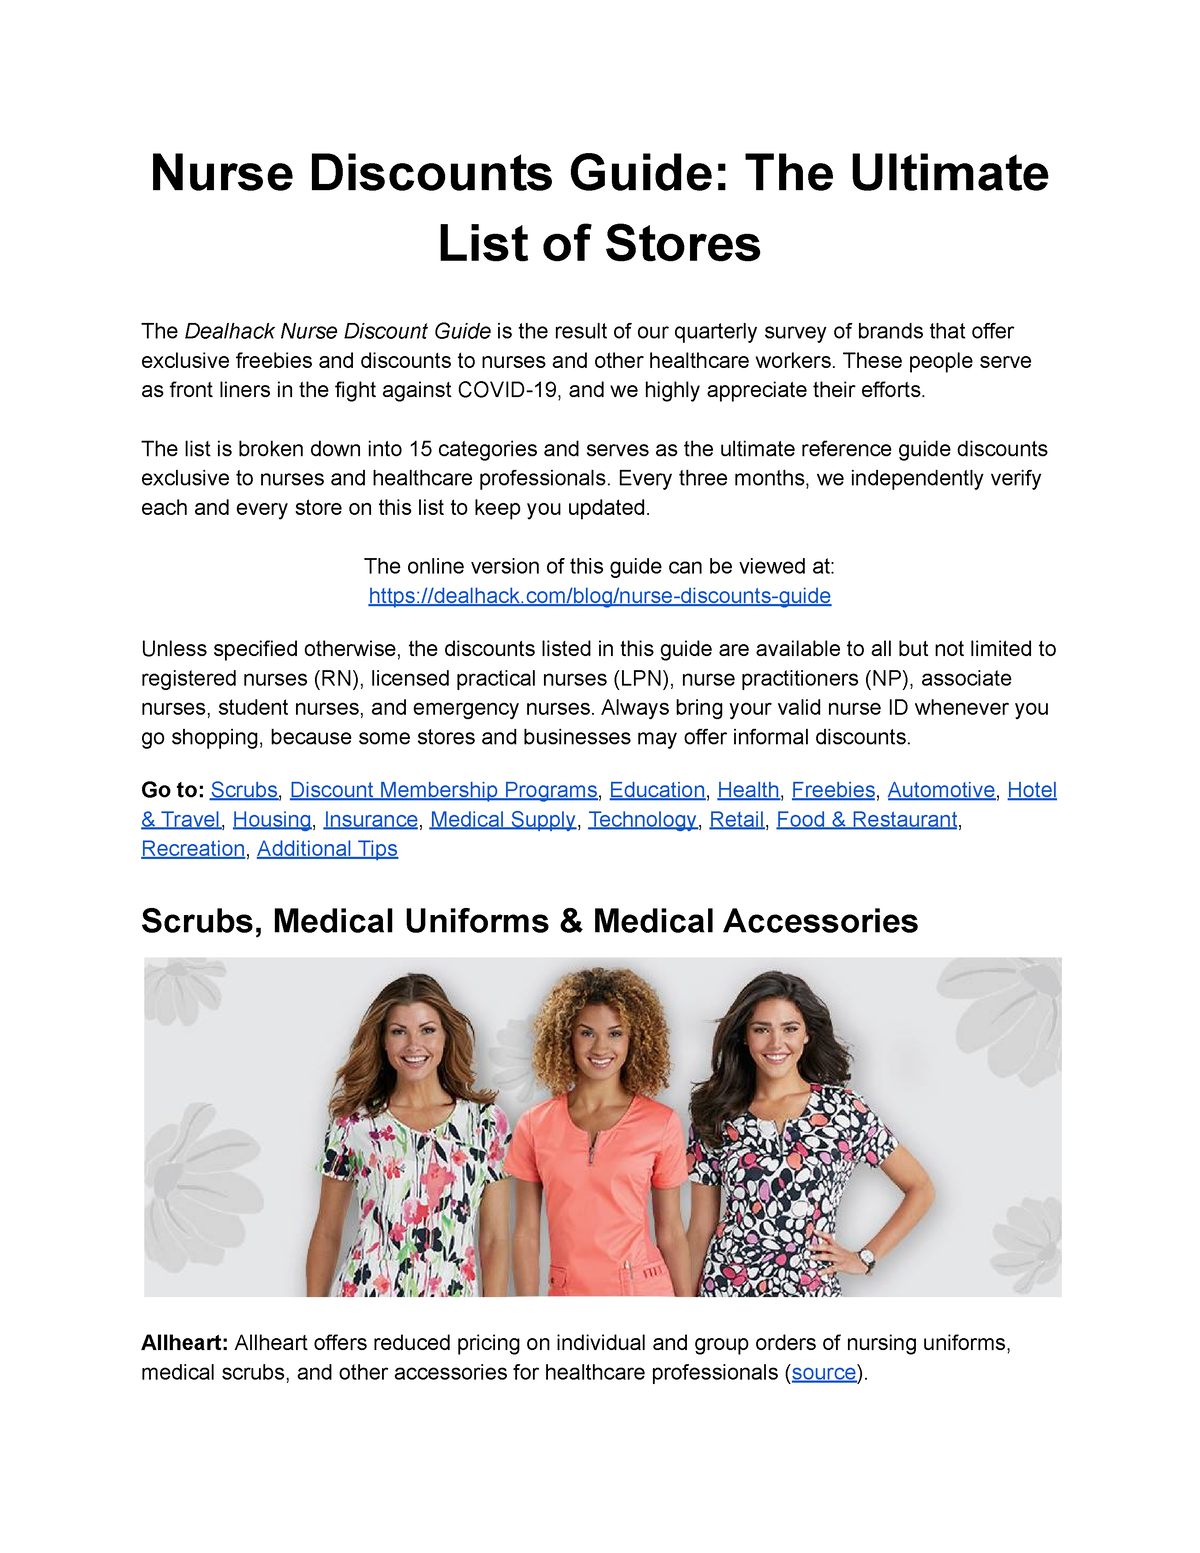 NurseDiscountGuide Nurse Discounts Guide The Ultimate List of